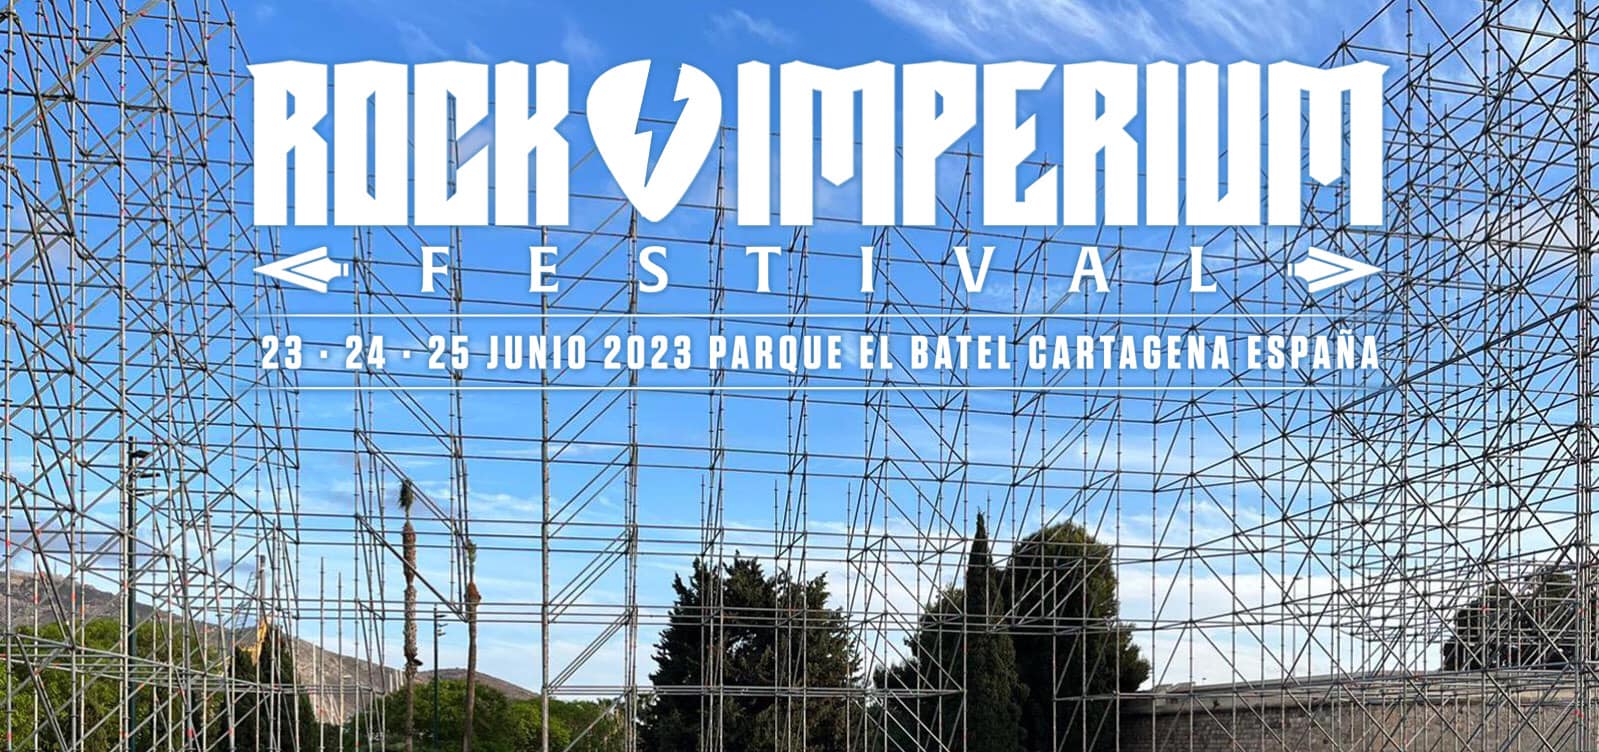 rock imperium festival 2023 pic 5